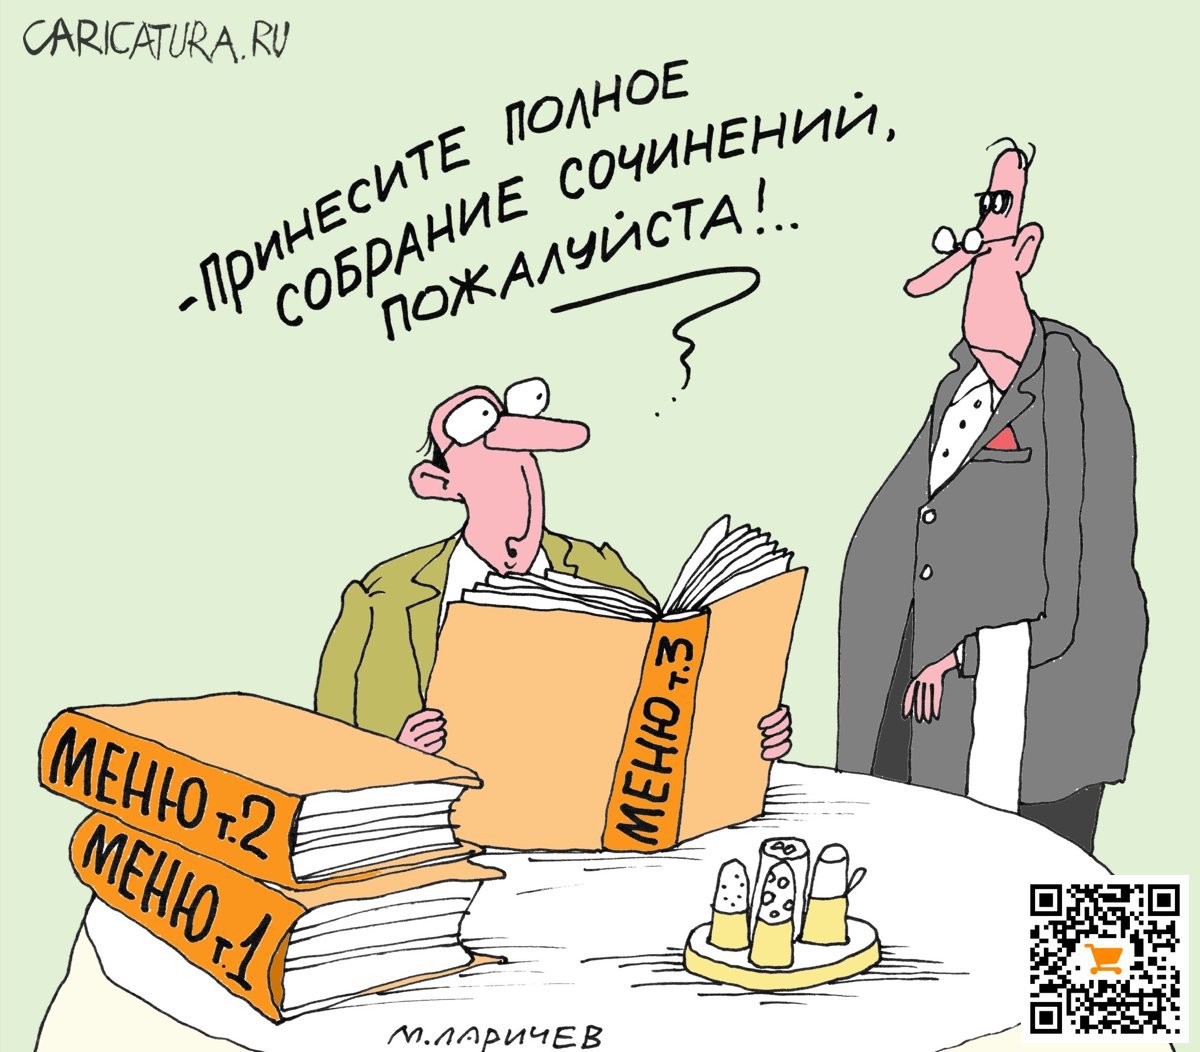 Карикатура "Полное собрание", Михаил Ларичев